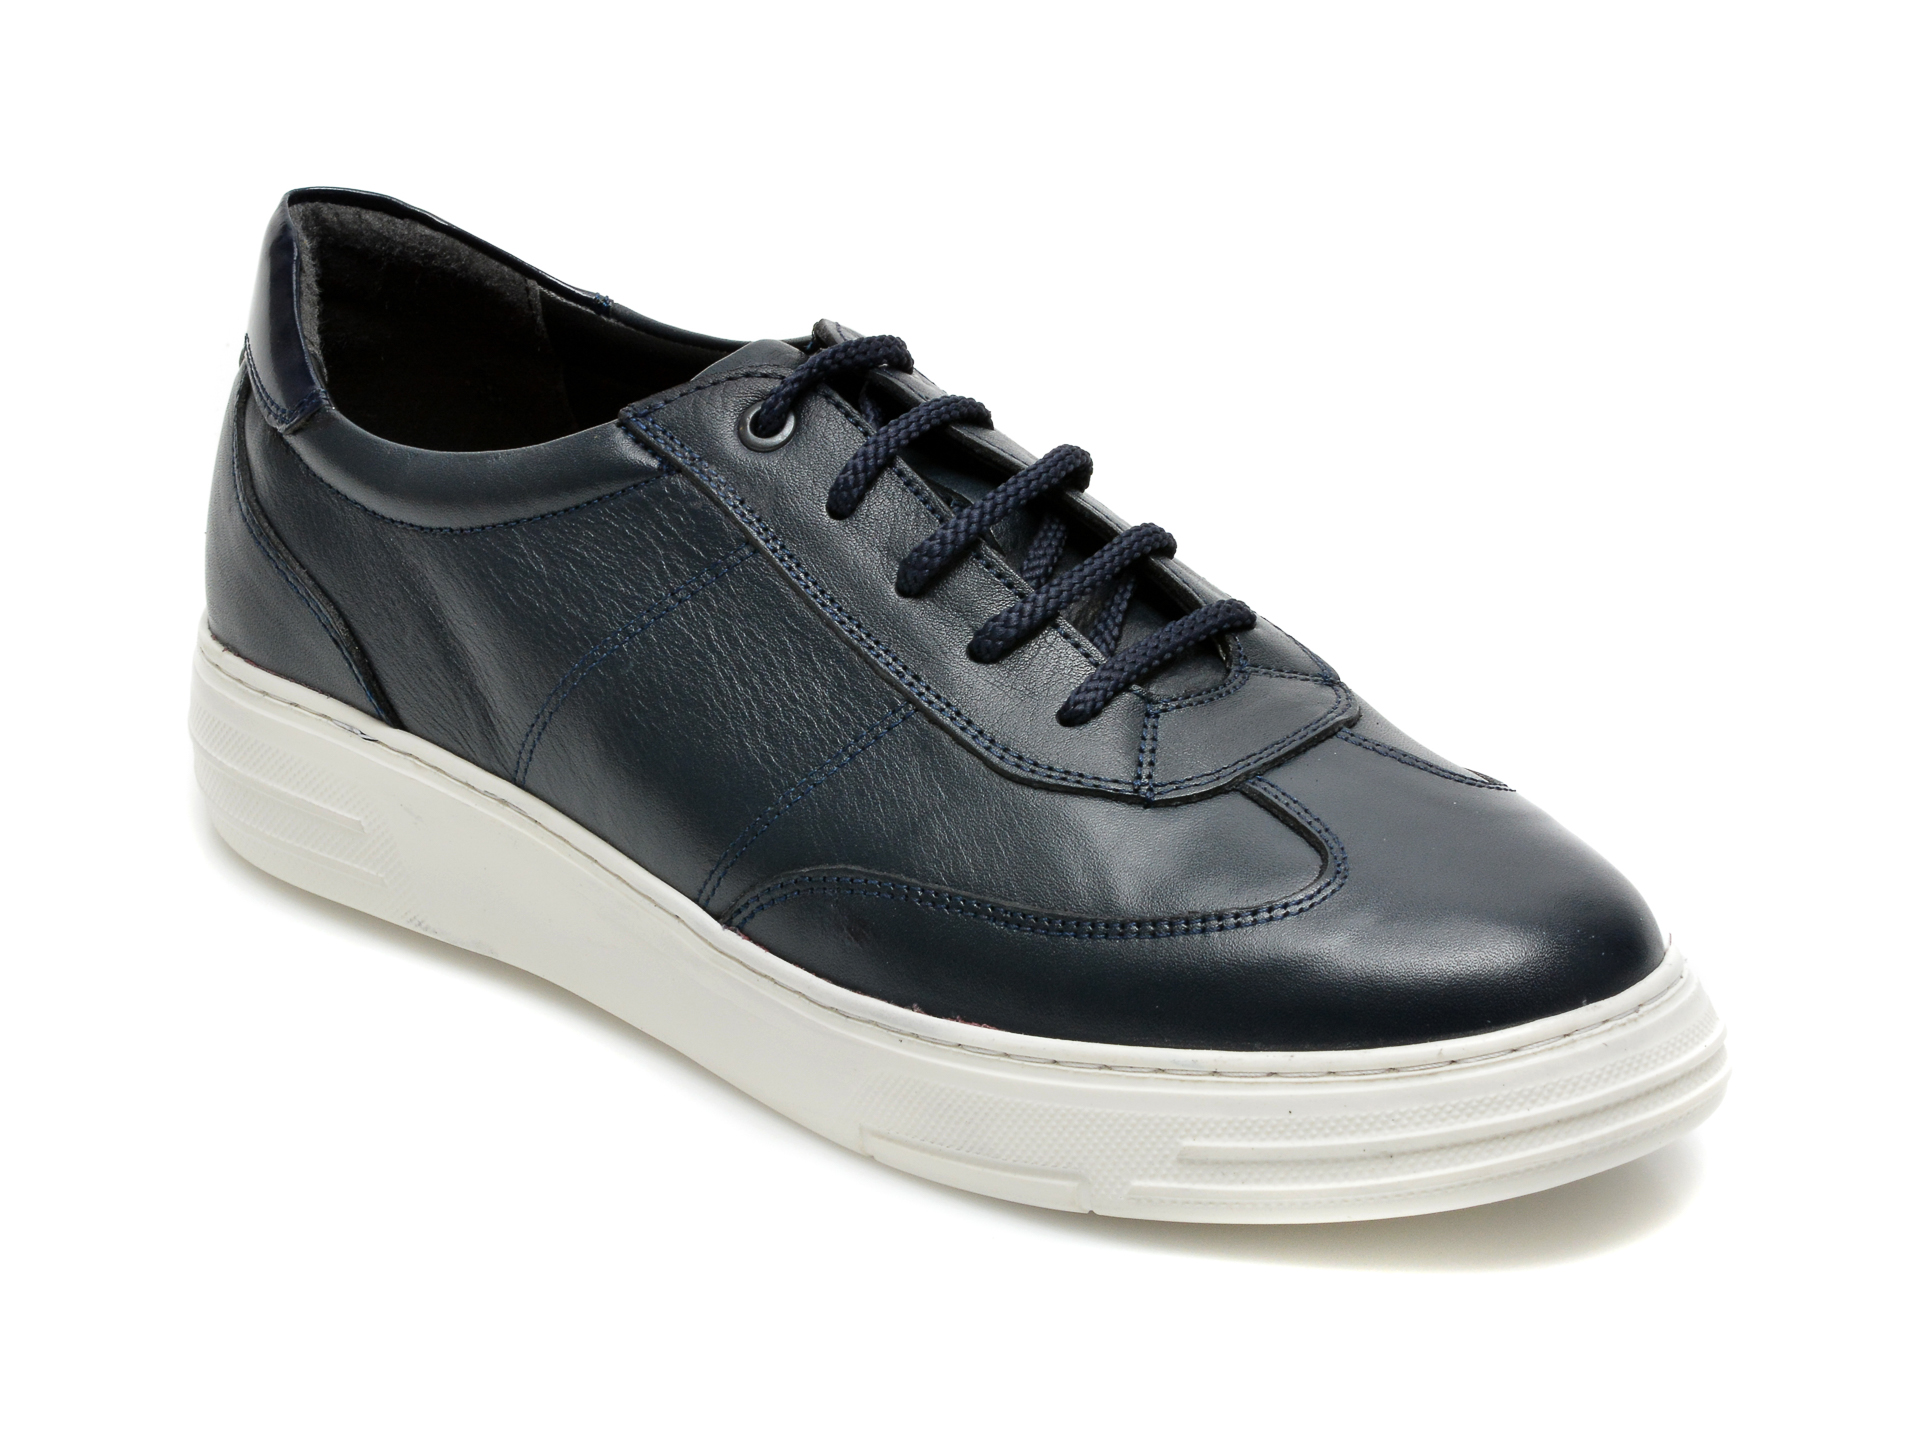 Pantofi OTTER bleumarin, E193, din piele naturala Otter poza reduceri 2021